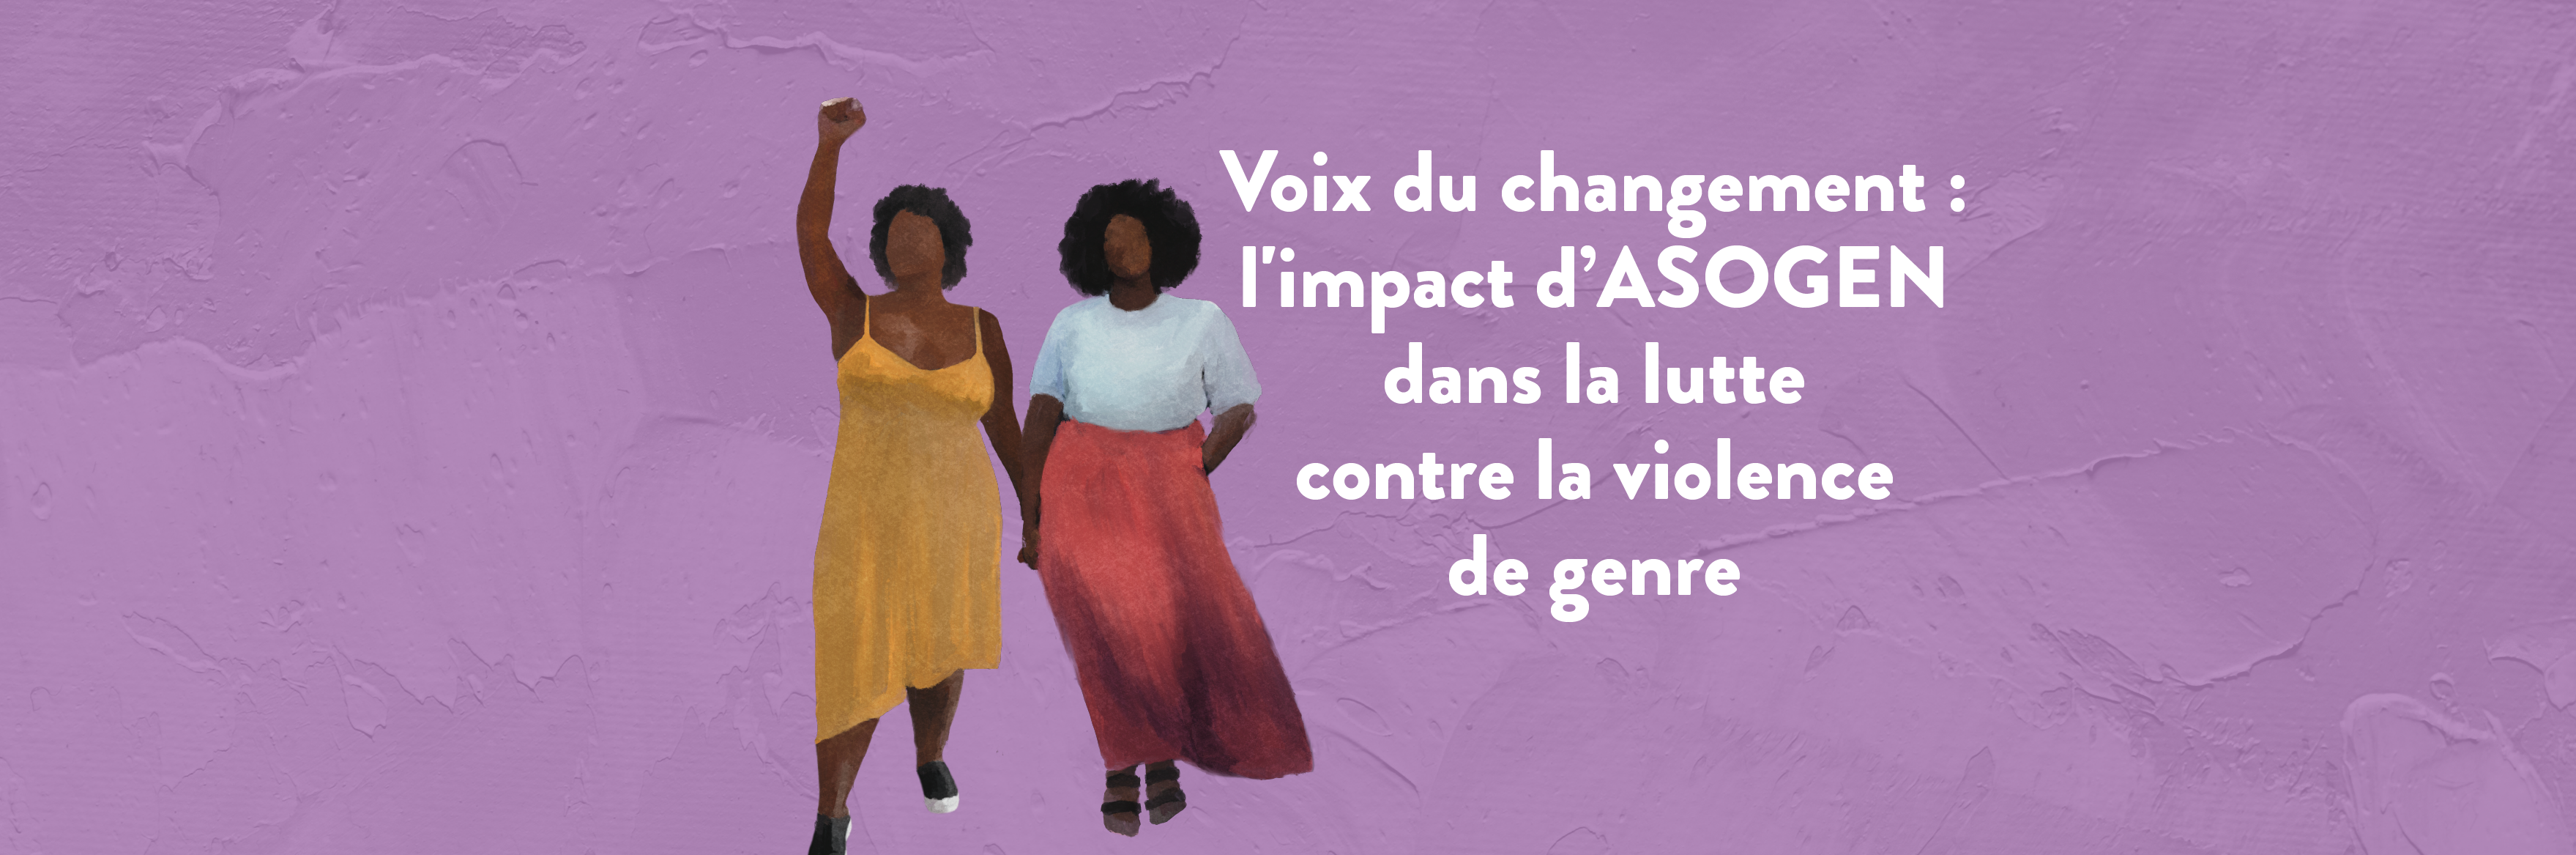 Voix du changement : l’impact d’ASOGEN dans la lutte contre la violence de genre 